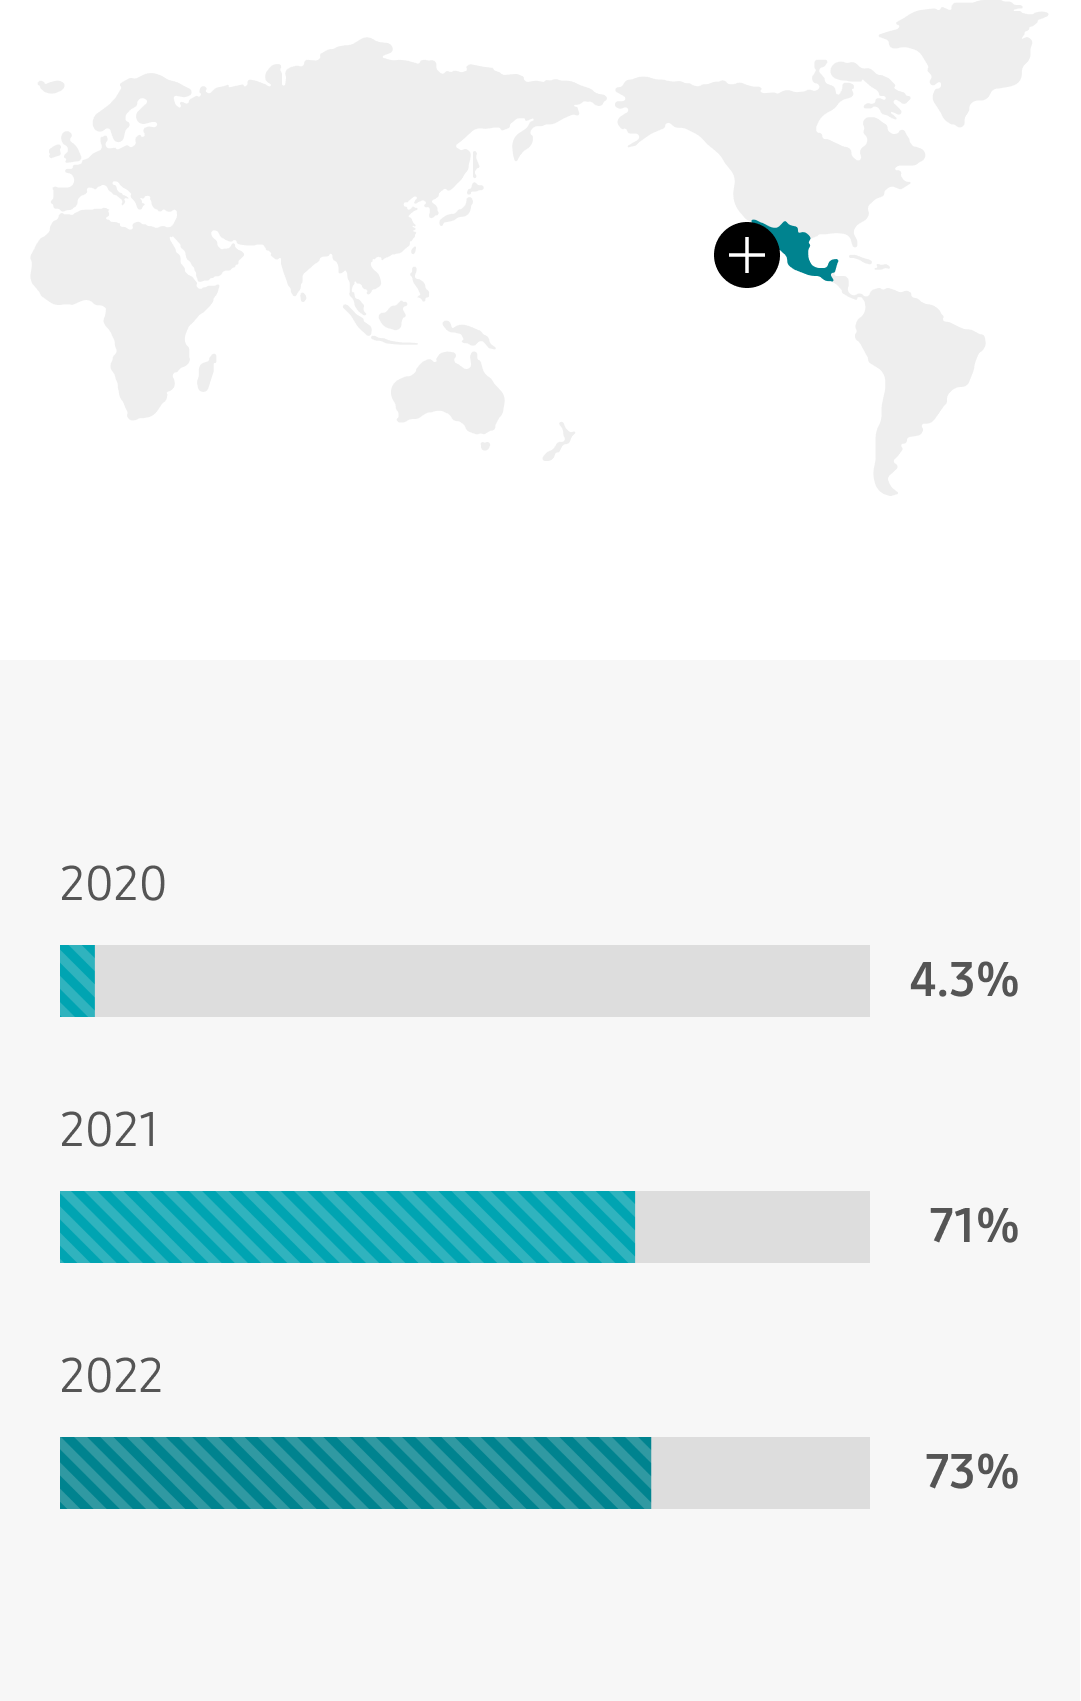 Mexico 2021 71%, 2022 73%, 2023 70%